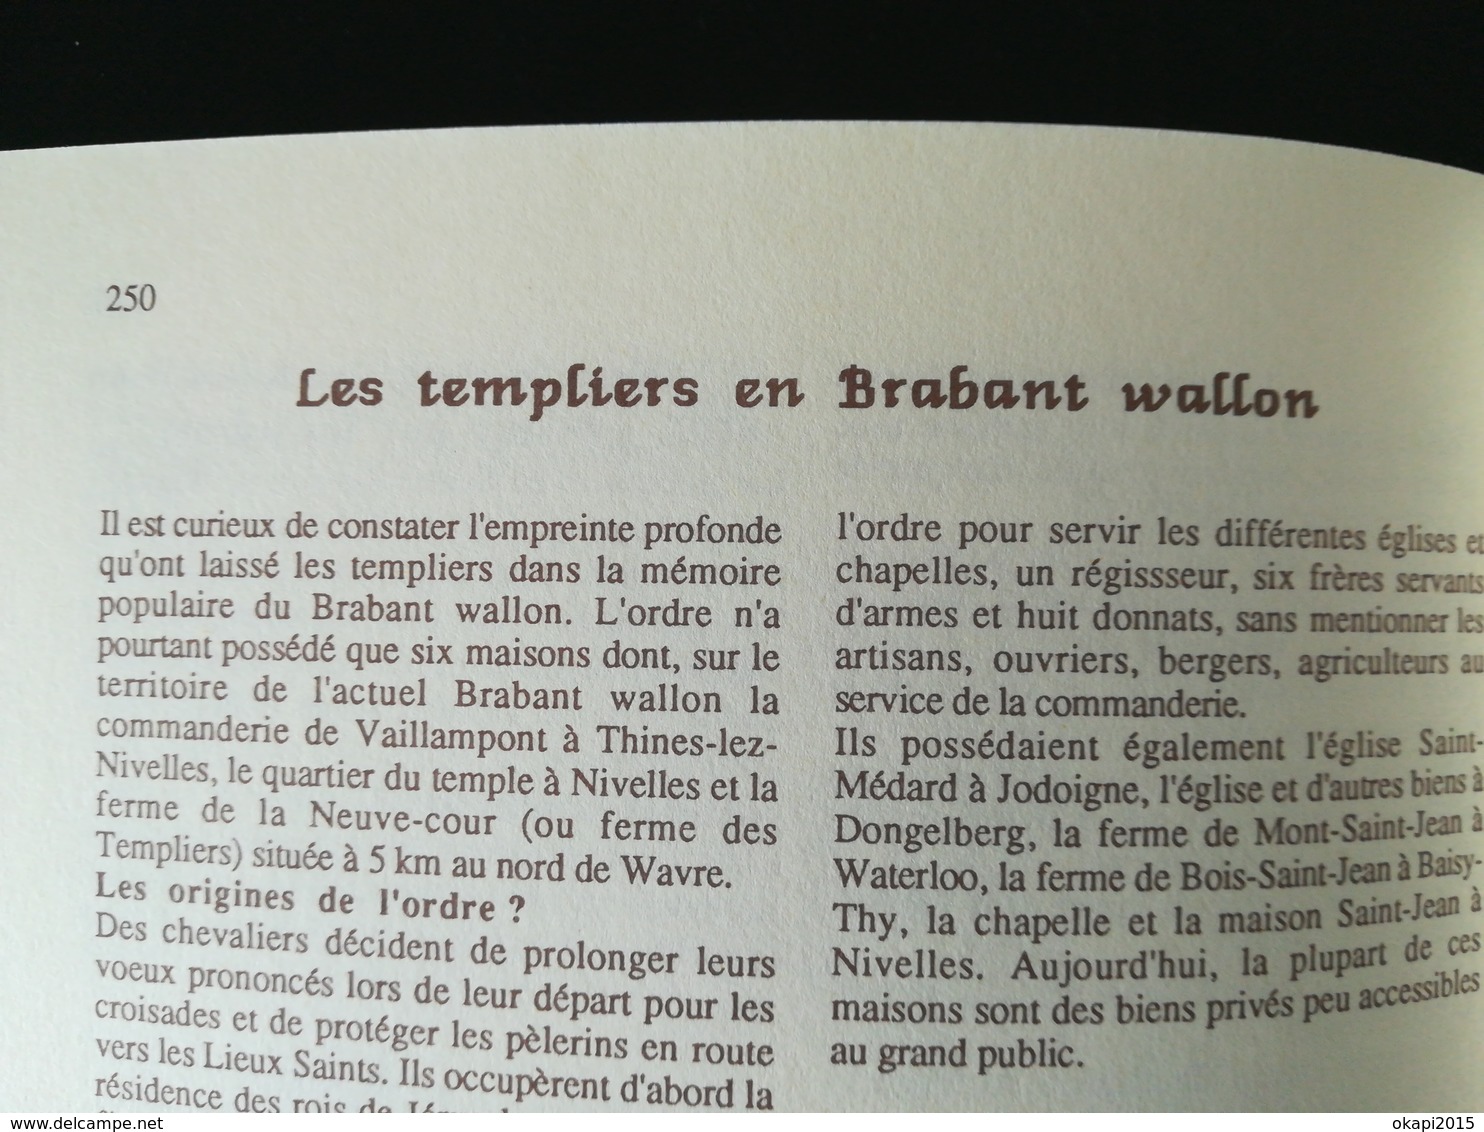 BRABANT WALLON GUIDE ALMANACH DES VILLES ET DES VILLAGES LIVRE RÉGIONALISME BELGIQUE WALLONIE ANNÉE 1991